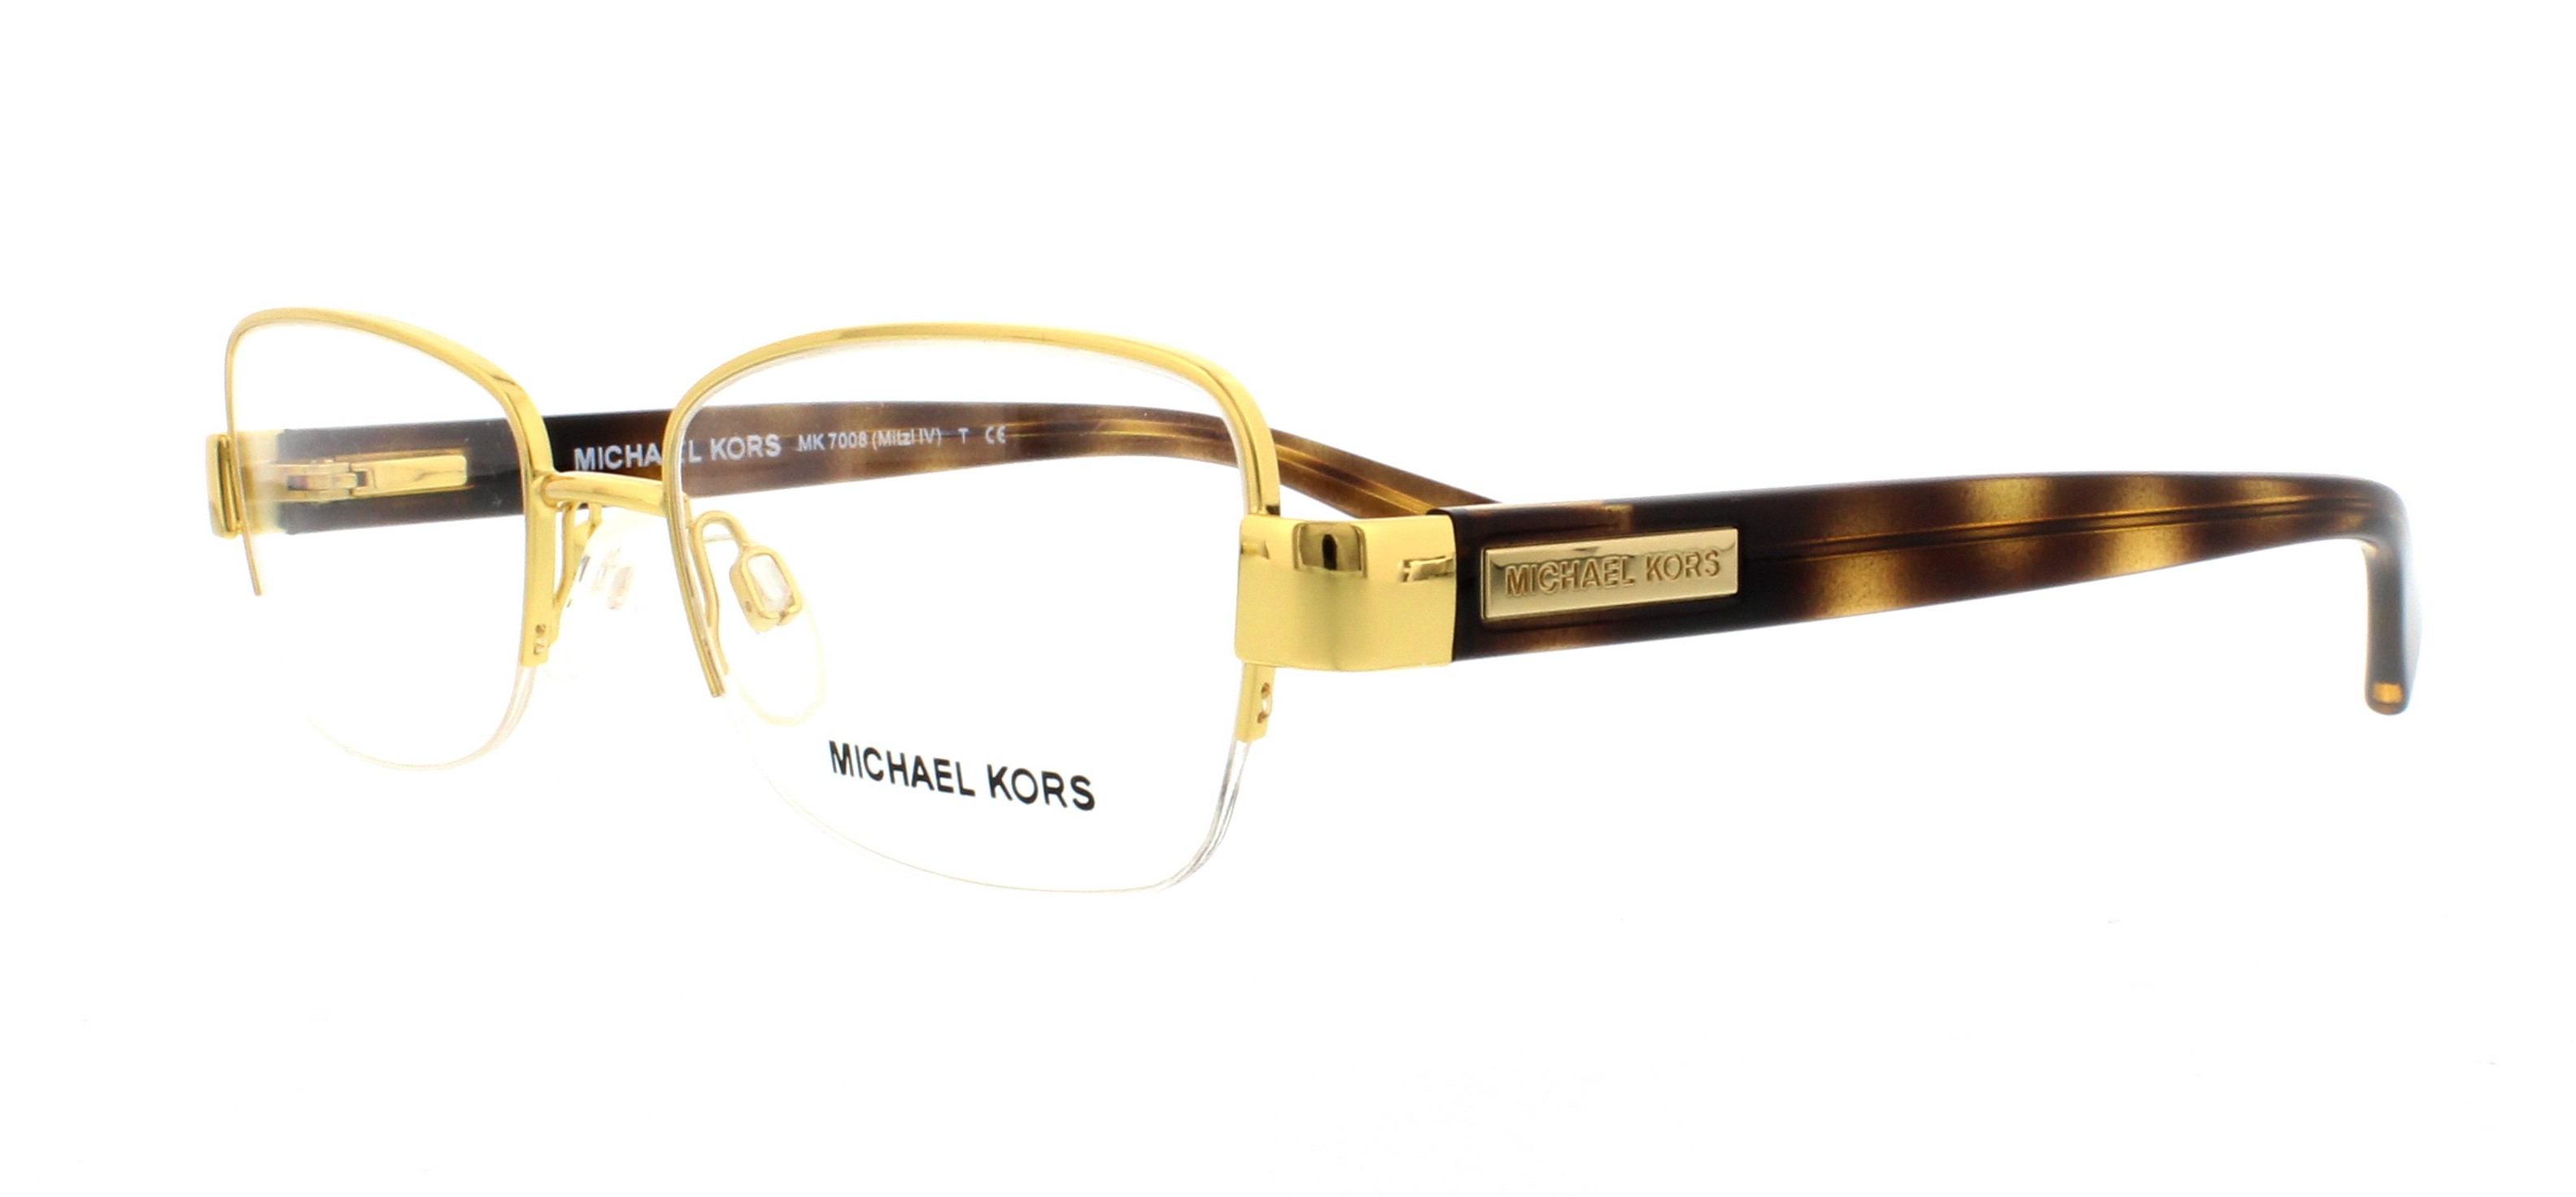 Designer Frames Outlet. Michael Kors Eyeglasses MK7008 Mitzi IV